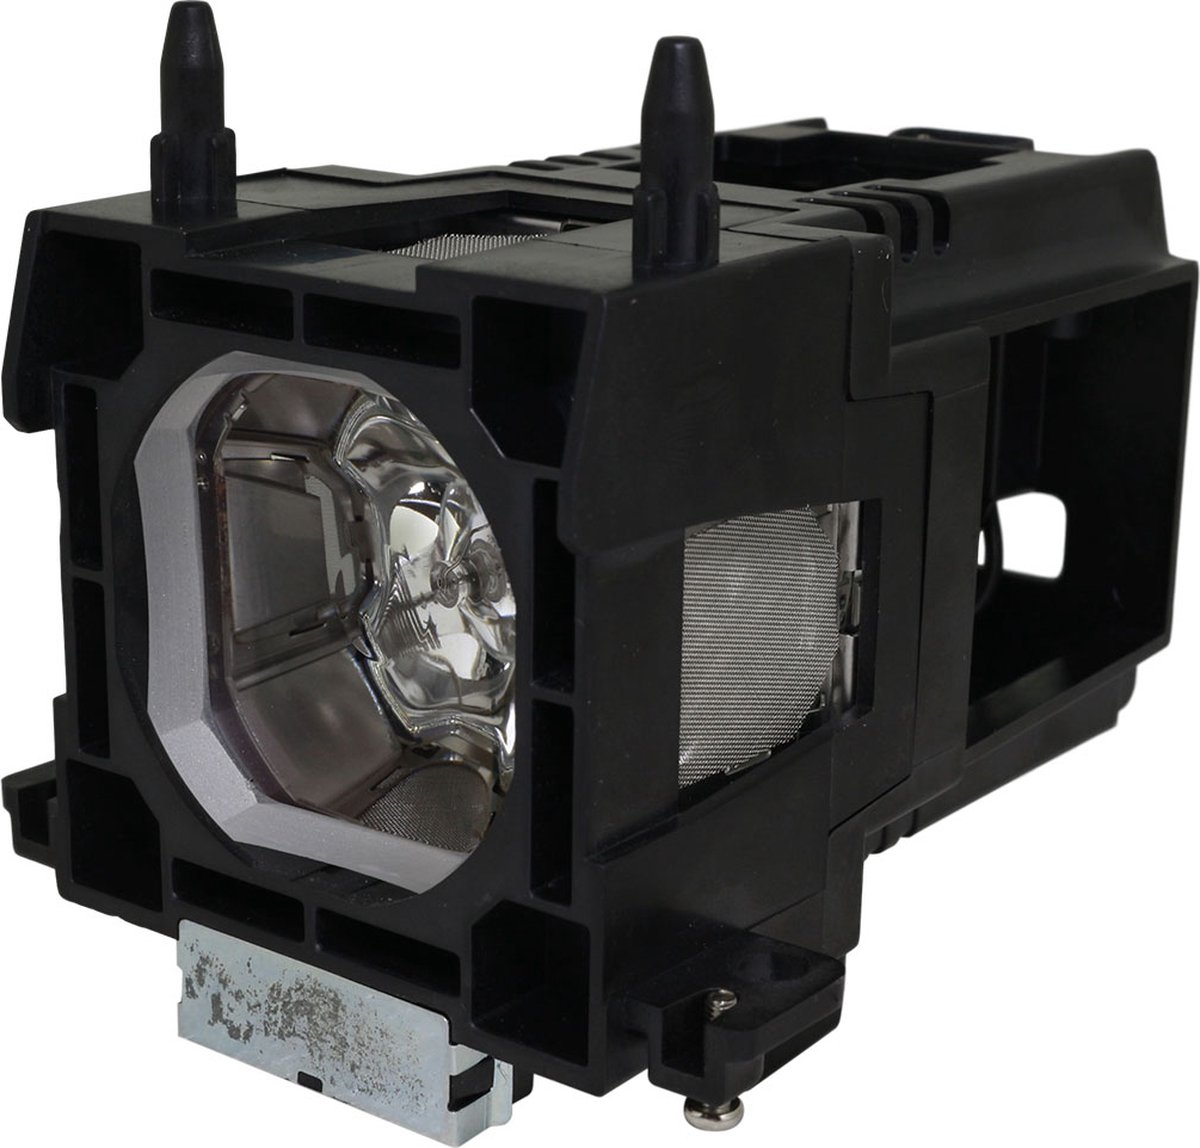 Beamerlamp geschikt voor de EIKI LC-XN200L beamer, lamp code 13080024. Bevat originele NSHA lamp, prestaties gelijk aan origineel.